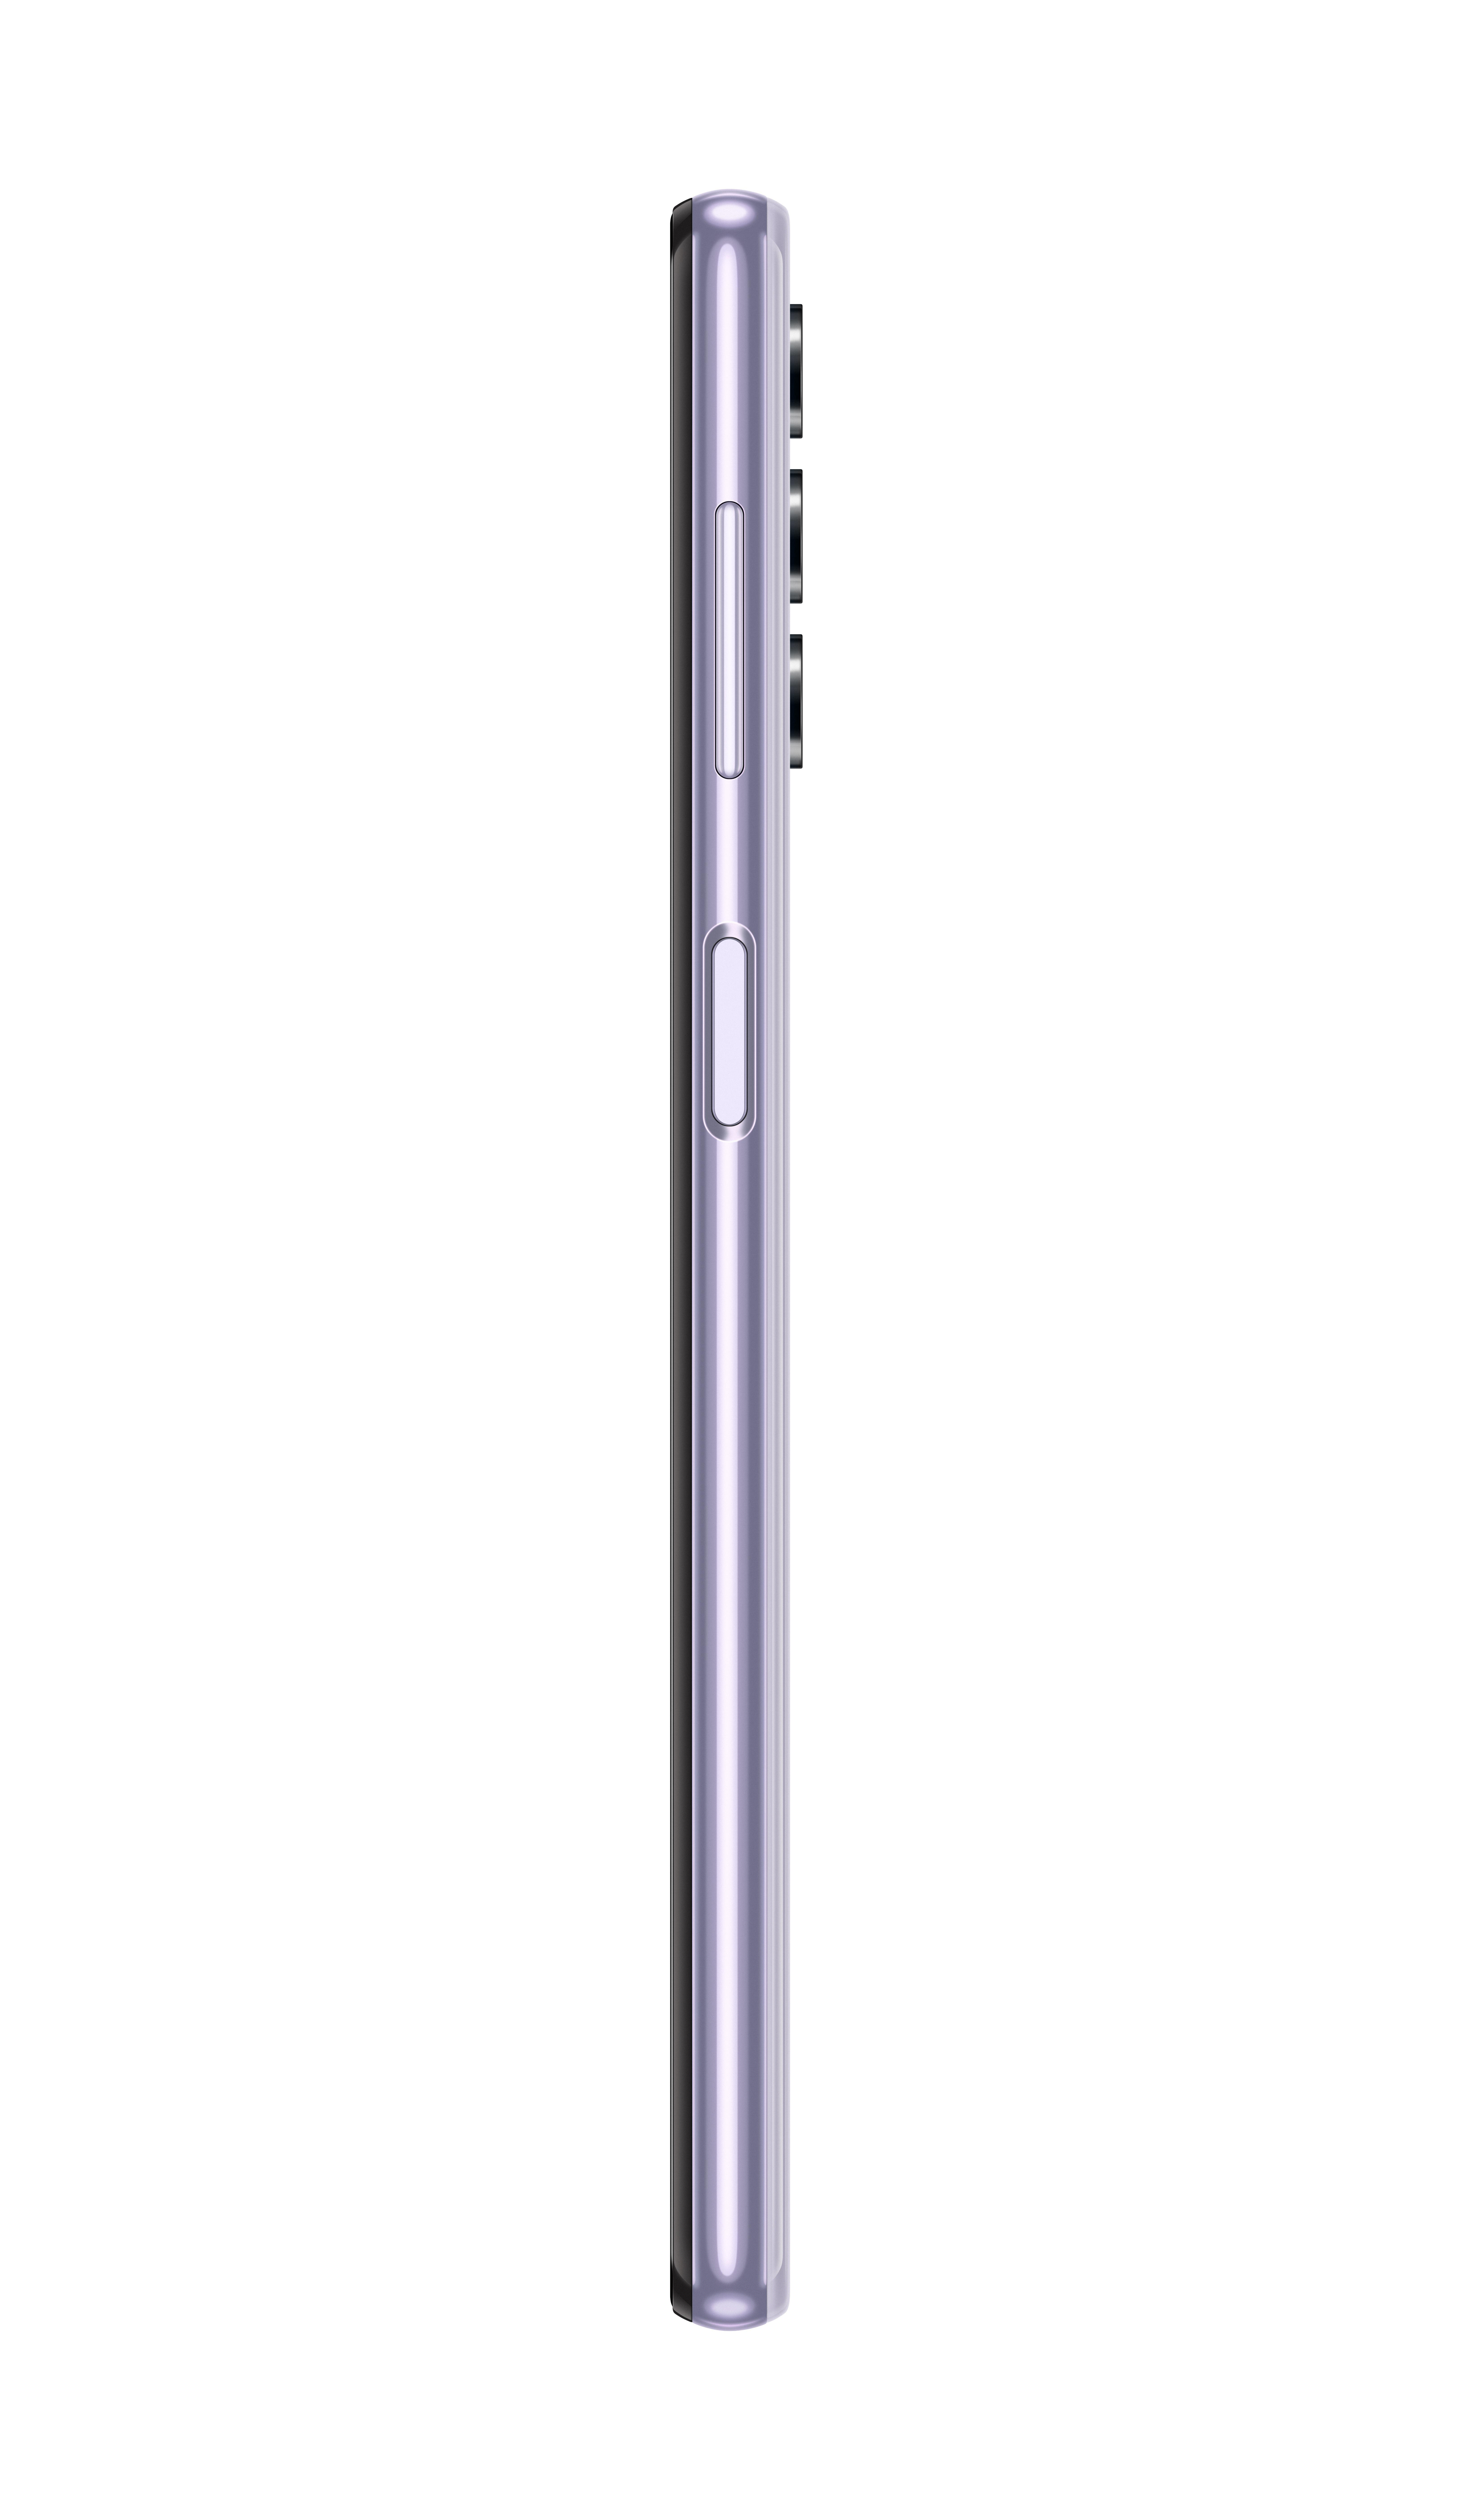 A32 Dual SIM GB SAMSUNG Violett 5G 128 Galaxy